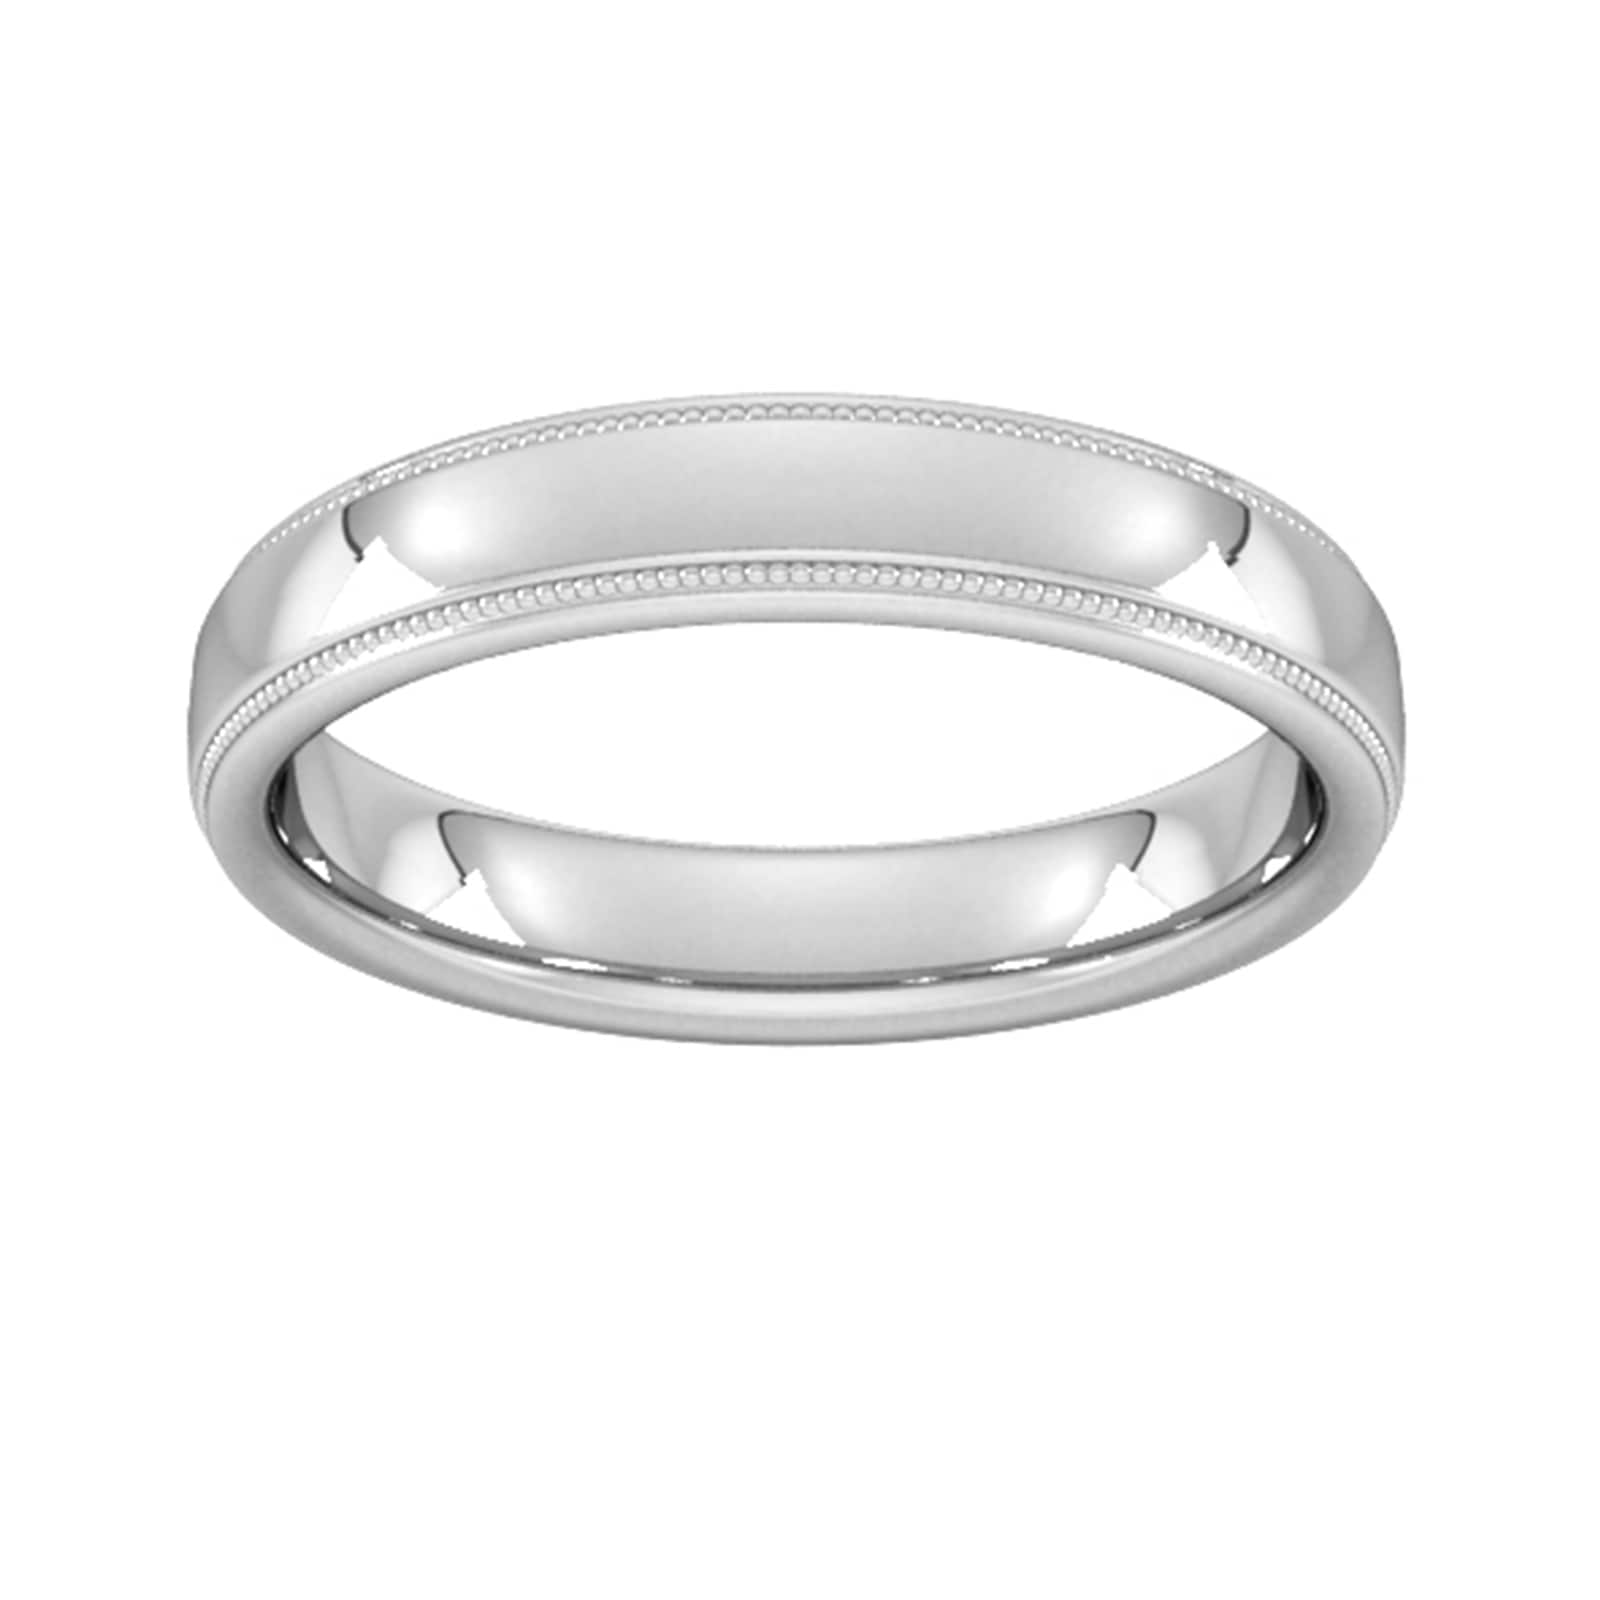 4mm Slight Court Heavy Milgrain Edge Wedding Ring In 950 Palladium - Ring Size V